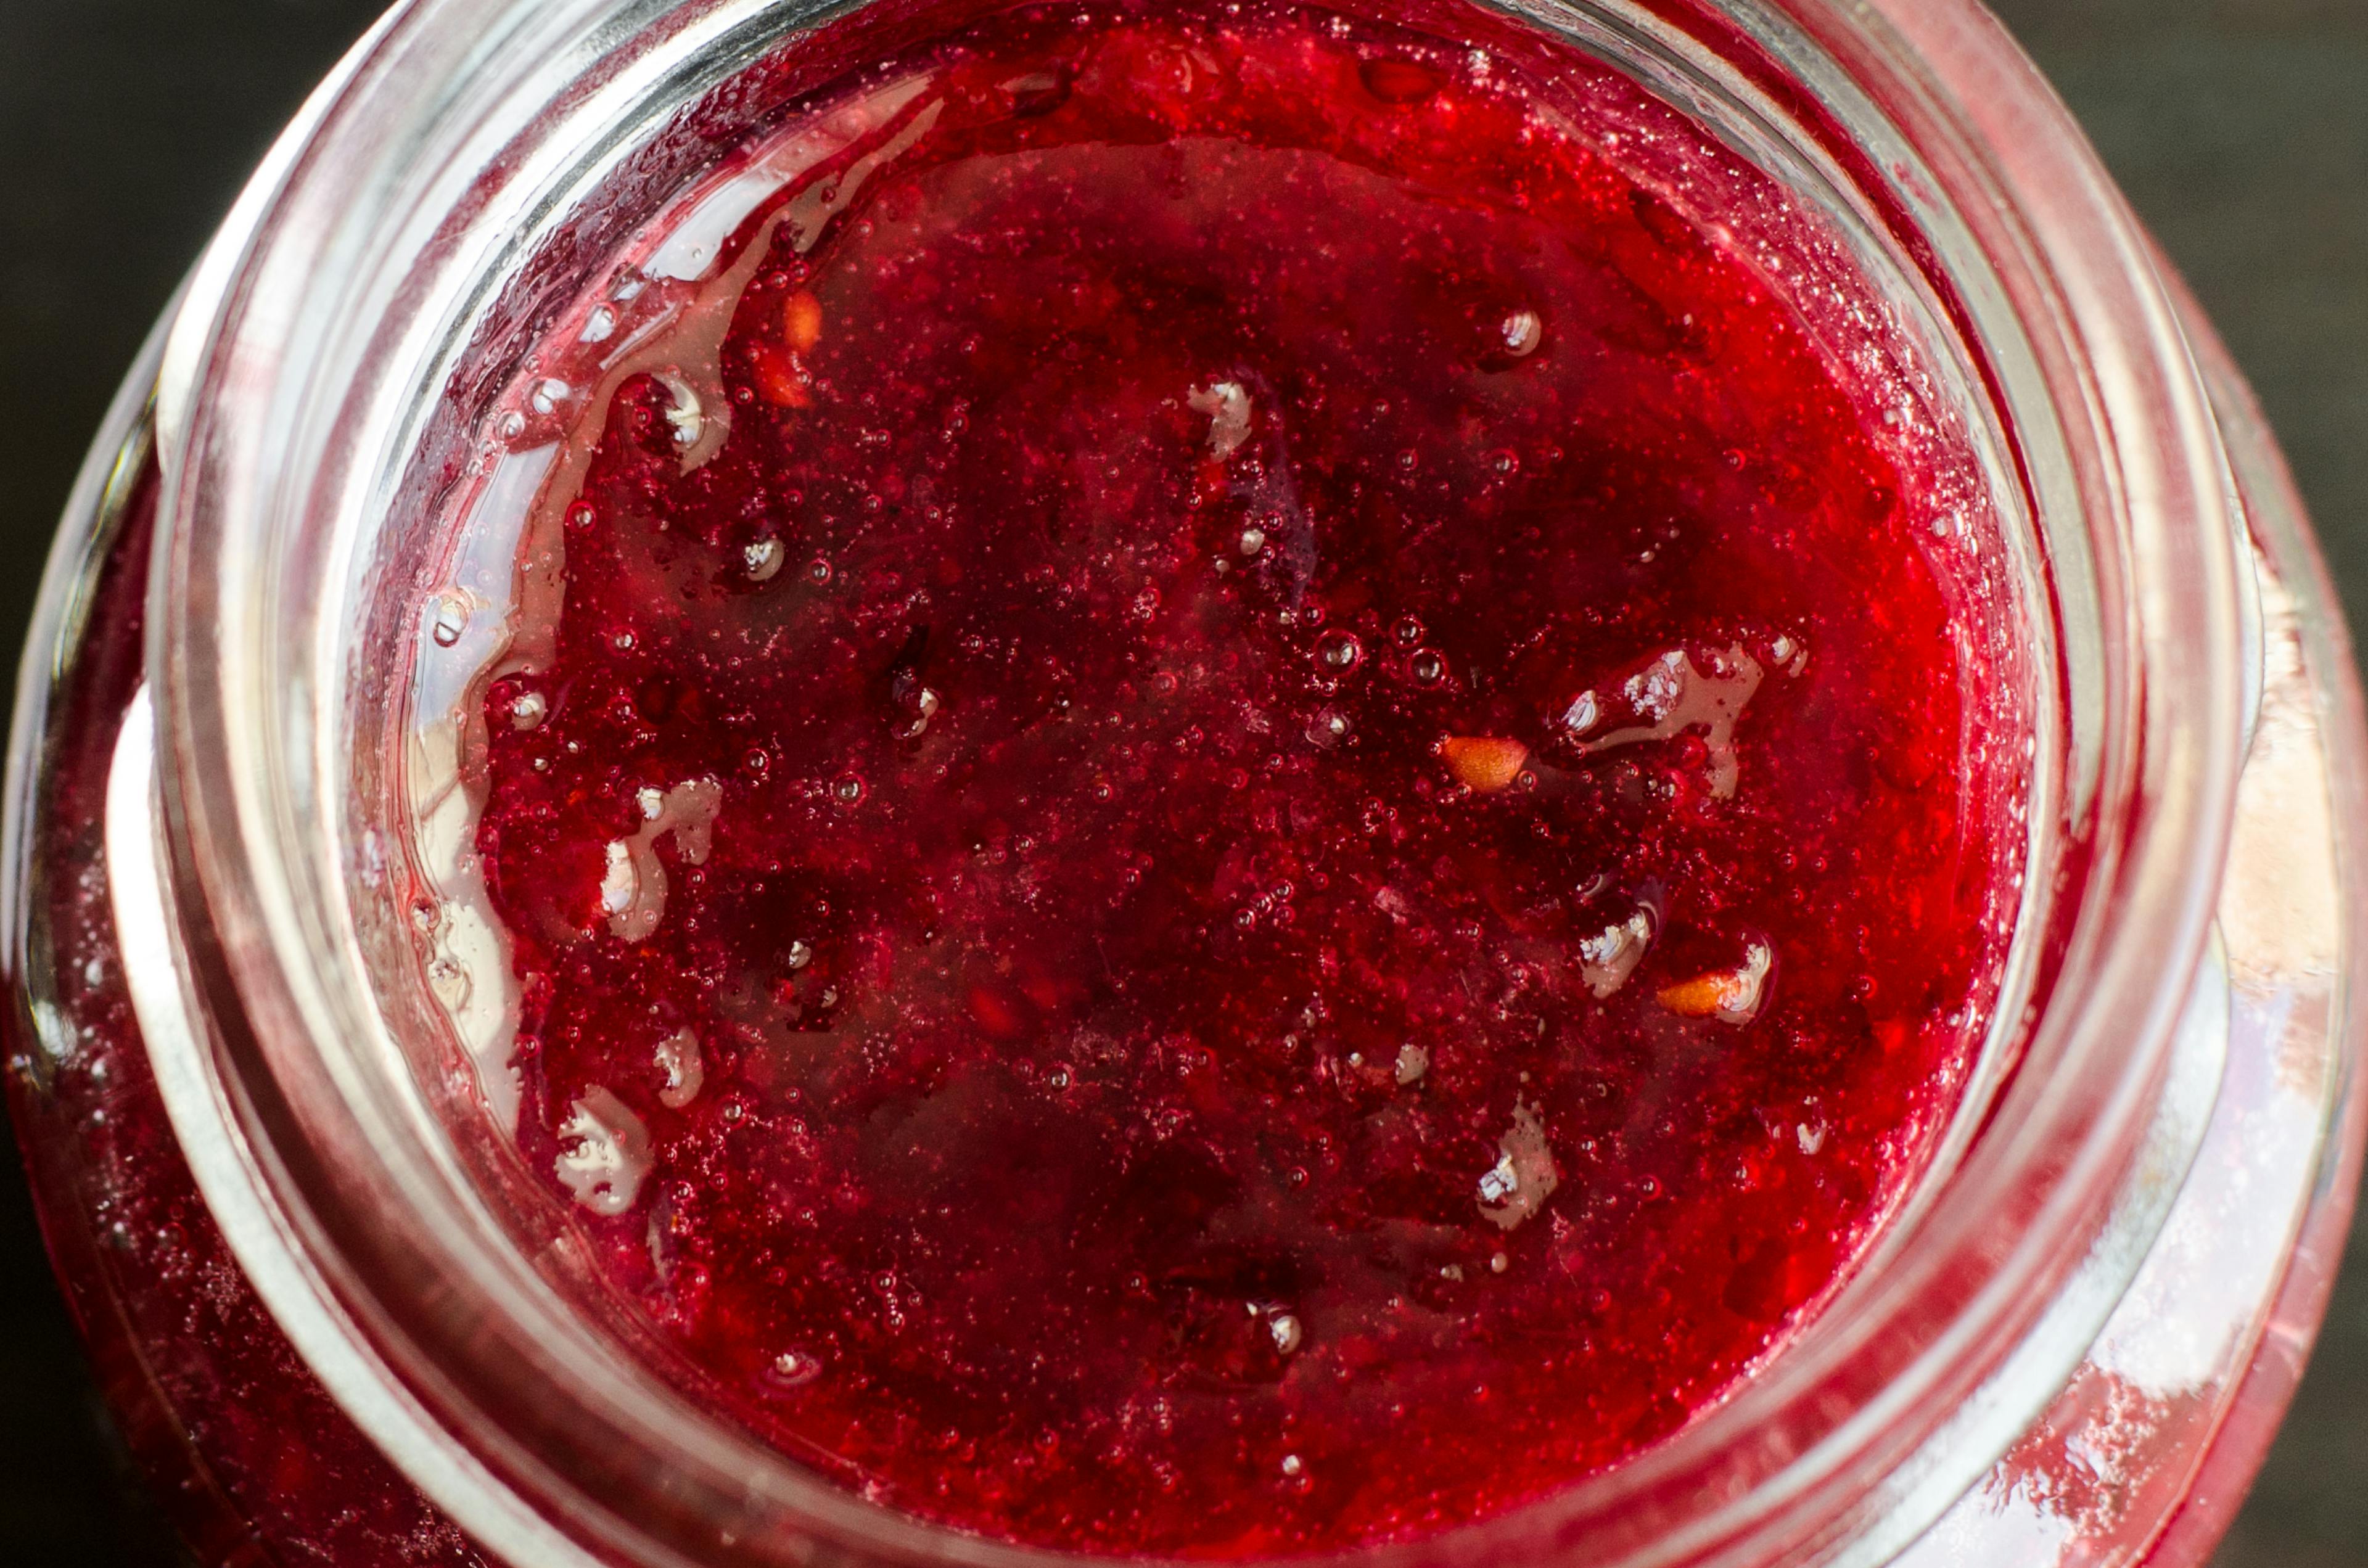 Red scrub in a jar